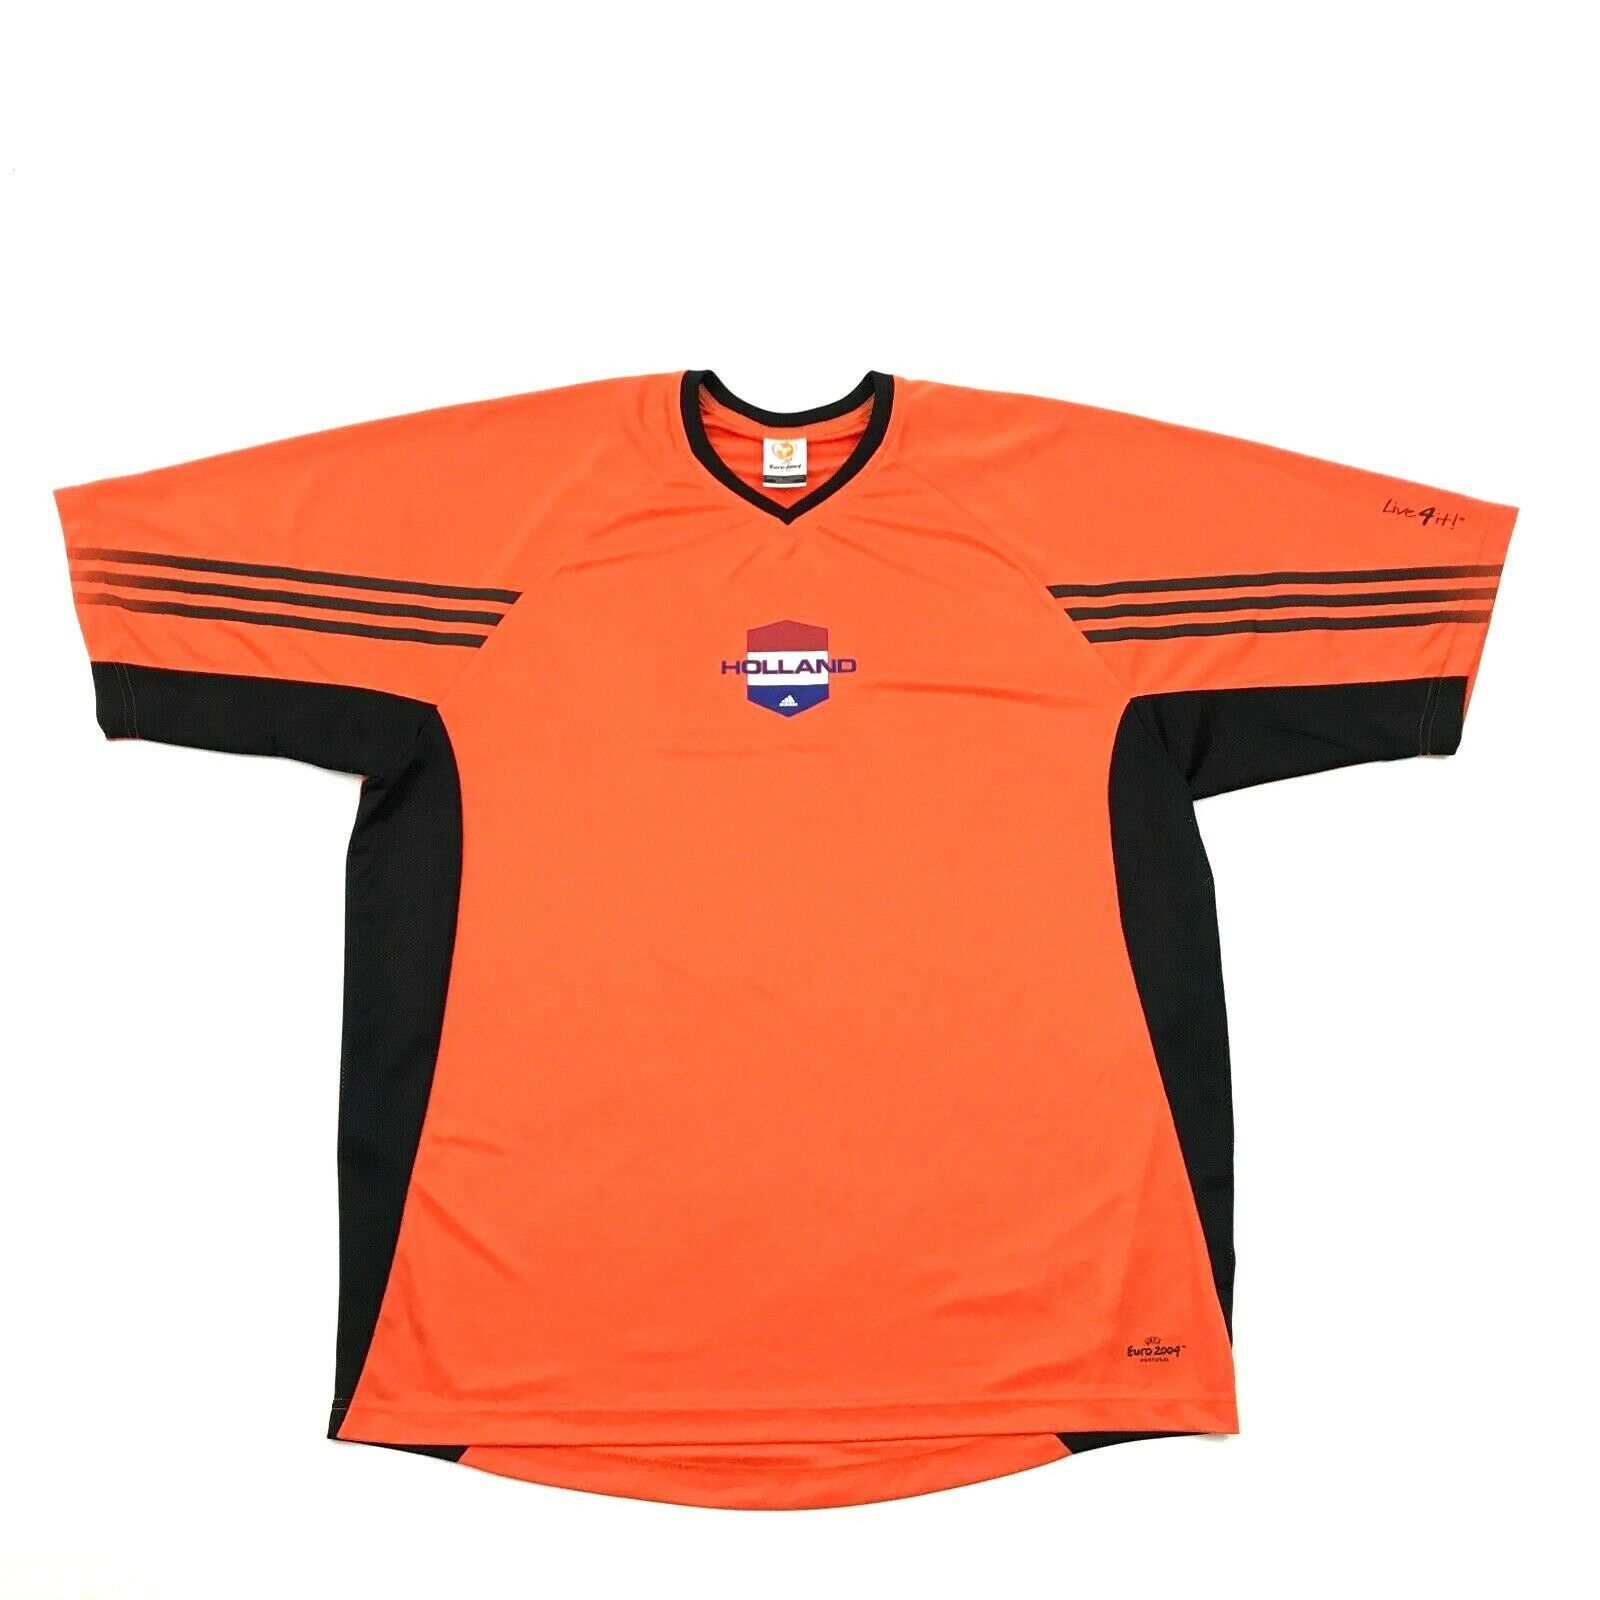 Adidas Holland Netherlands Soccer Jersey Size Extra Large XL Orange ...